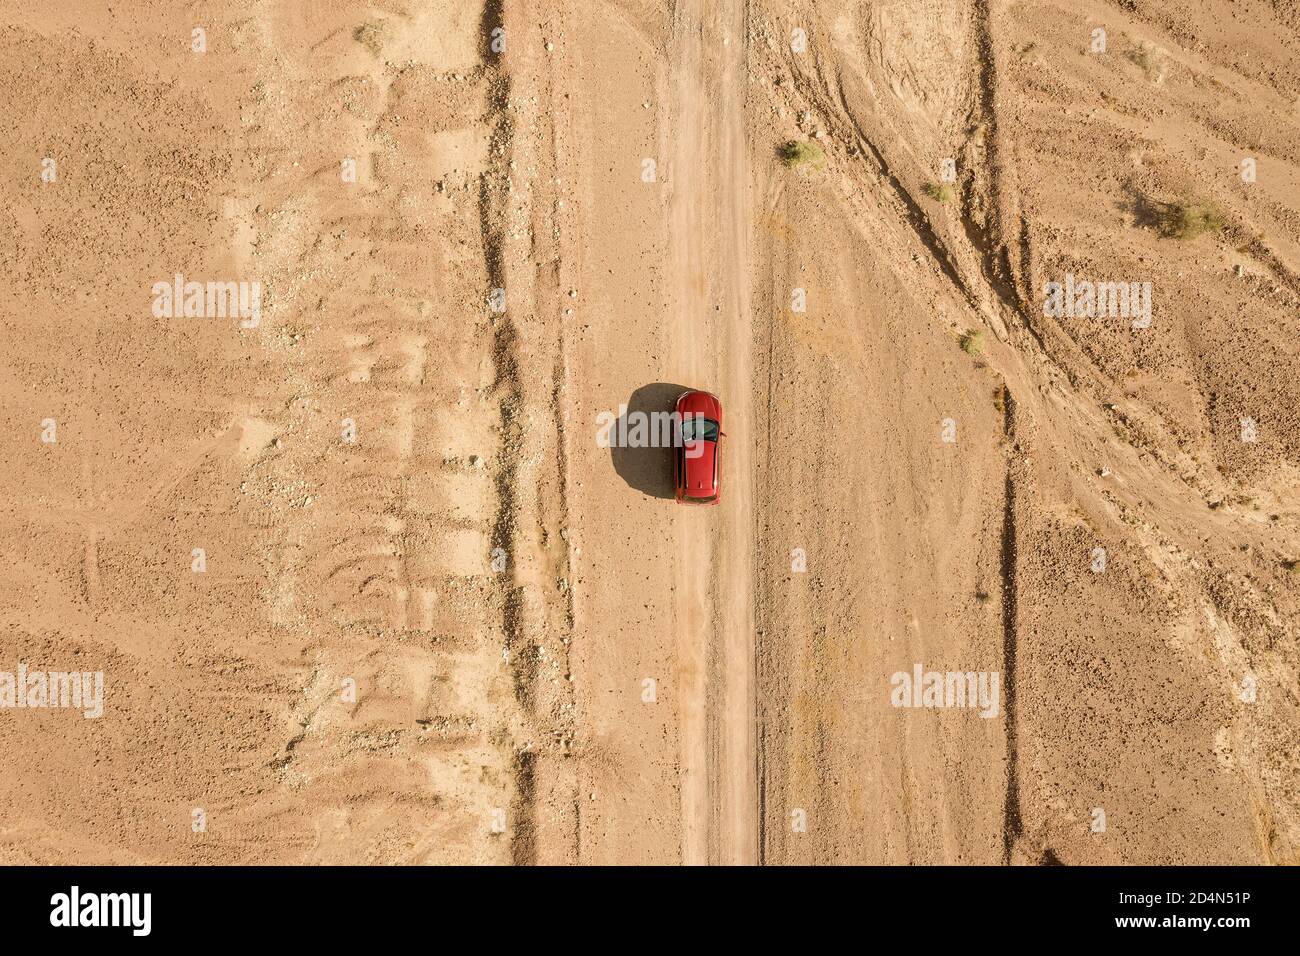 SUV rosso su un percorso desertico, immagine aerea ad alta quota. Foto Stock